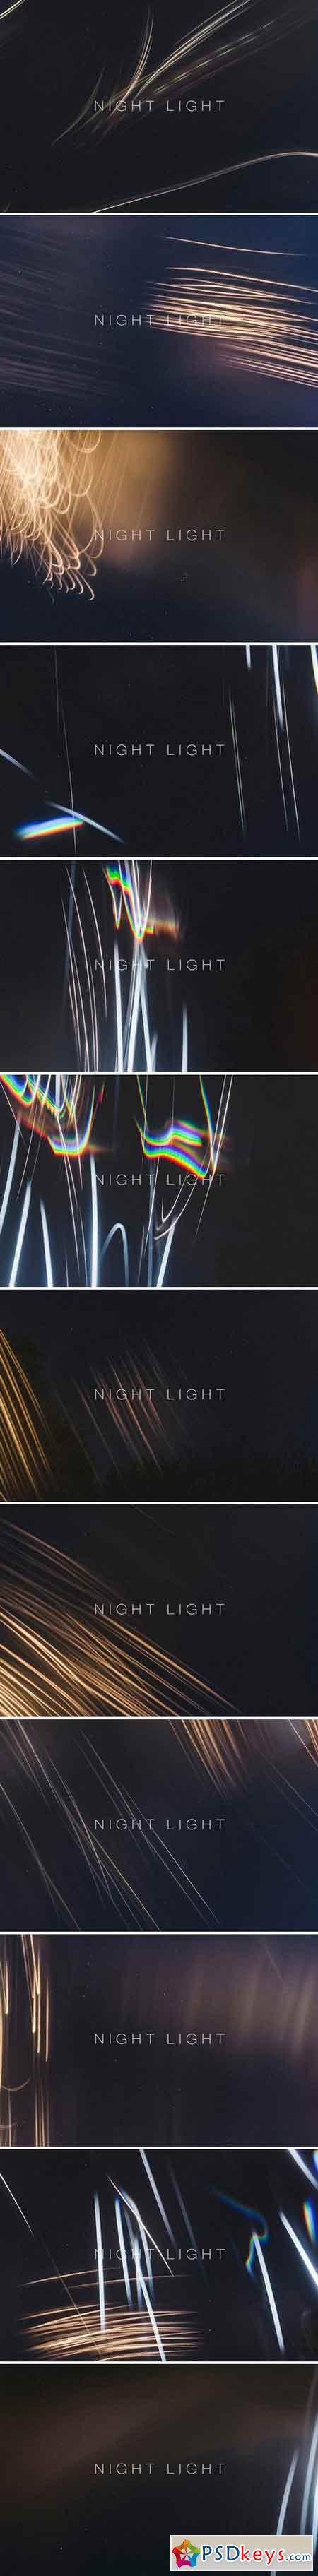 Night Light 1926992